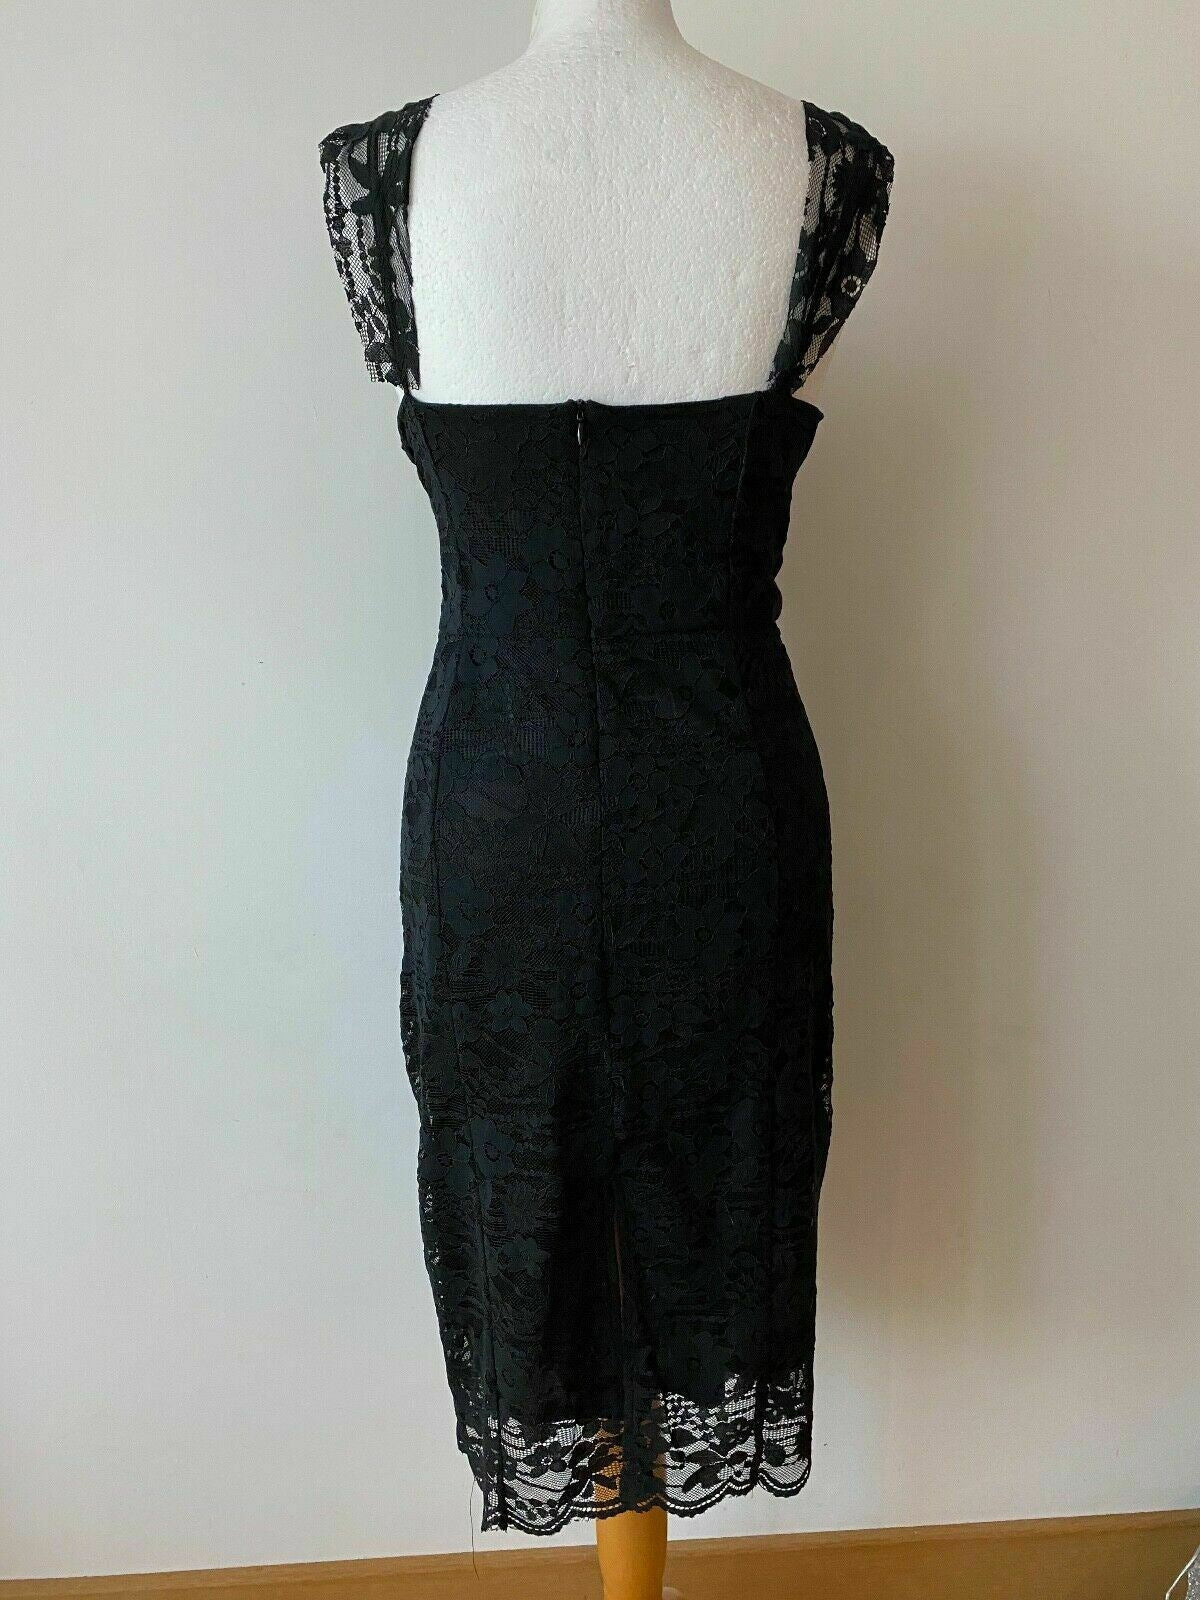 Black Layered Lace Shift Sleeveless Dress Size 16